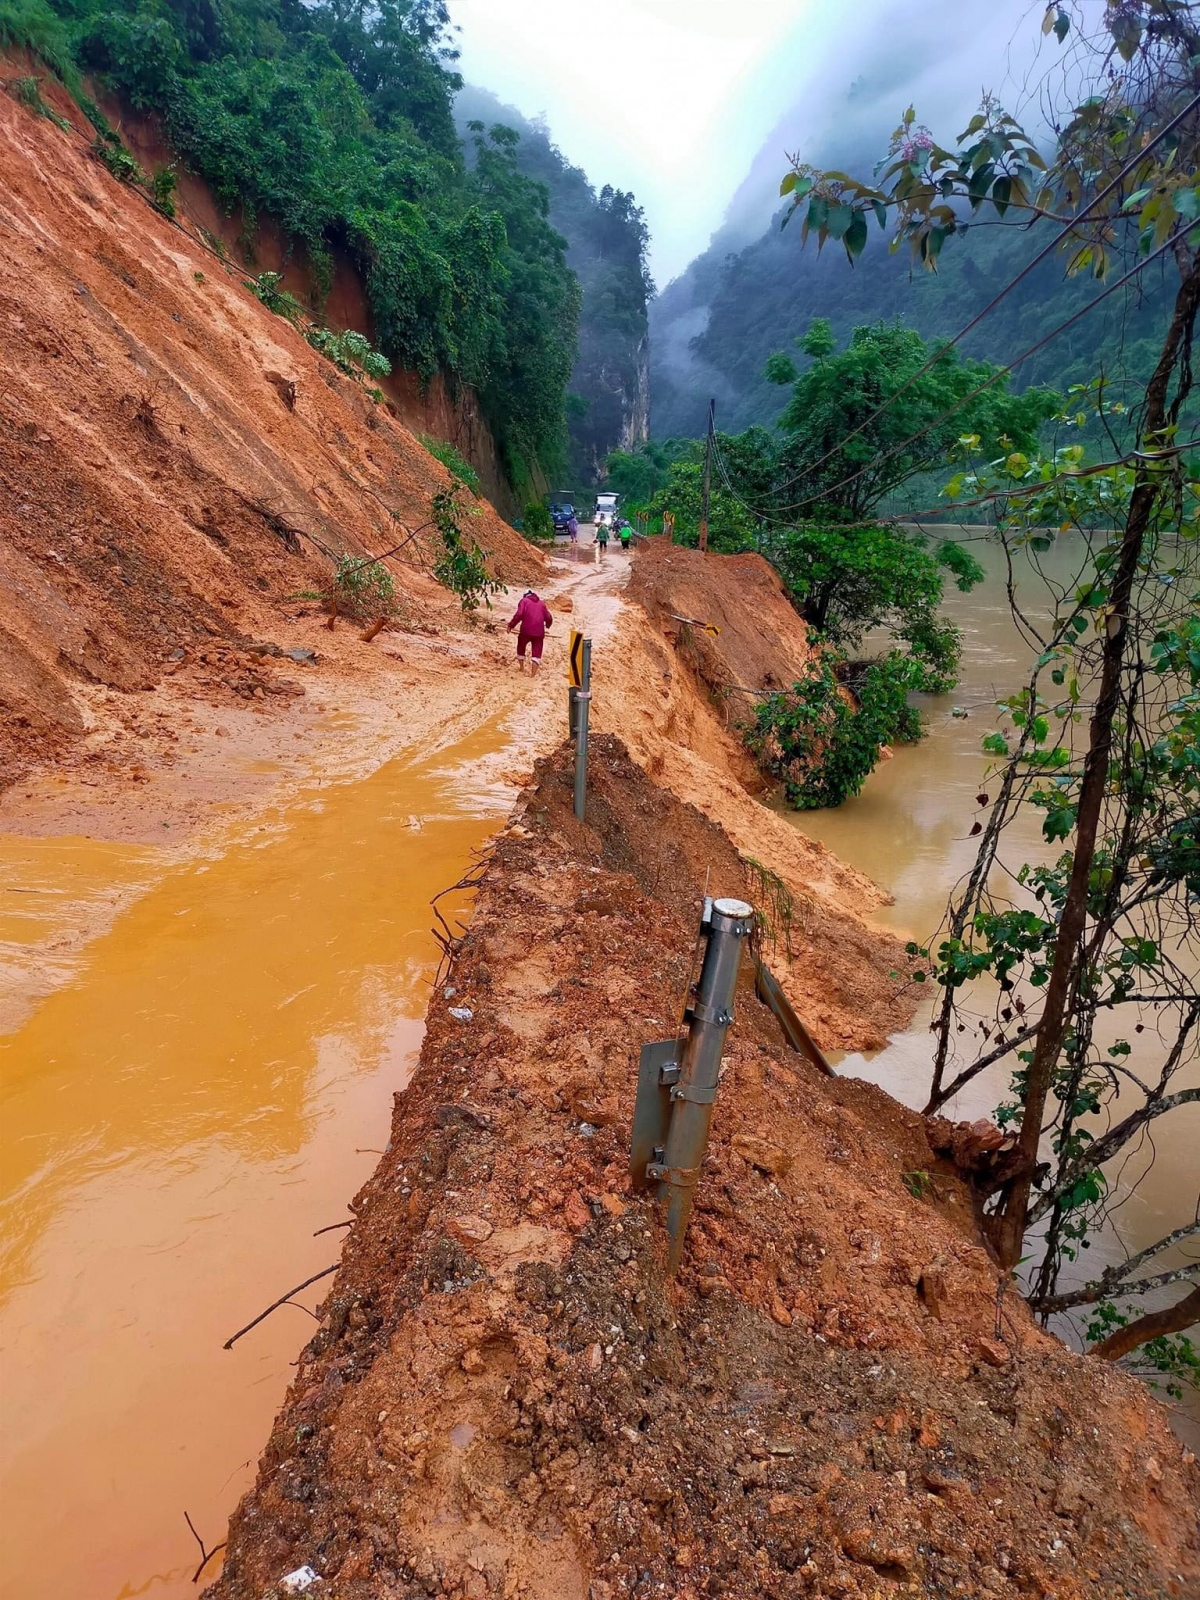 Quốc lộ 34 qua huyện Bảo Lâm bị sạt lở, ảnh hưởng nghiêm trọng đến việc đi lại của người dân (Ảnh: Nguyễn Hưng)